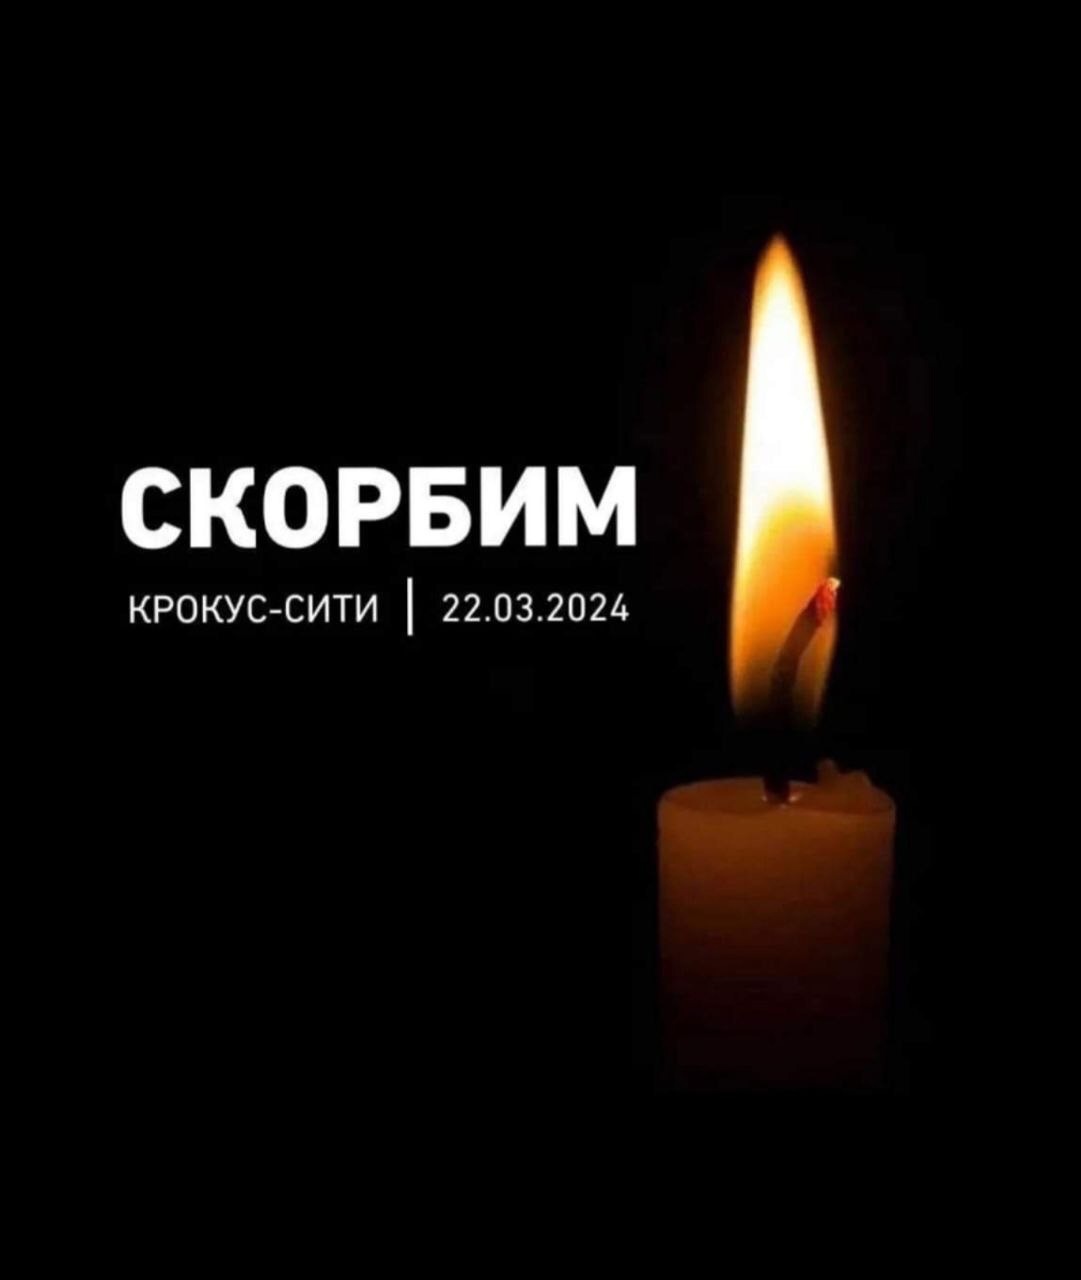 ТФОМС Республики Тыва выражает искренние соболезнования родным и близким погибших в результате теракта в «Крокус Сити Холле».